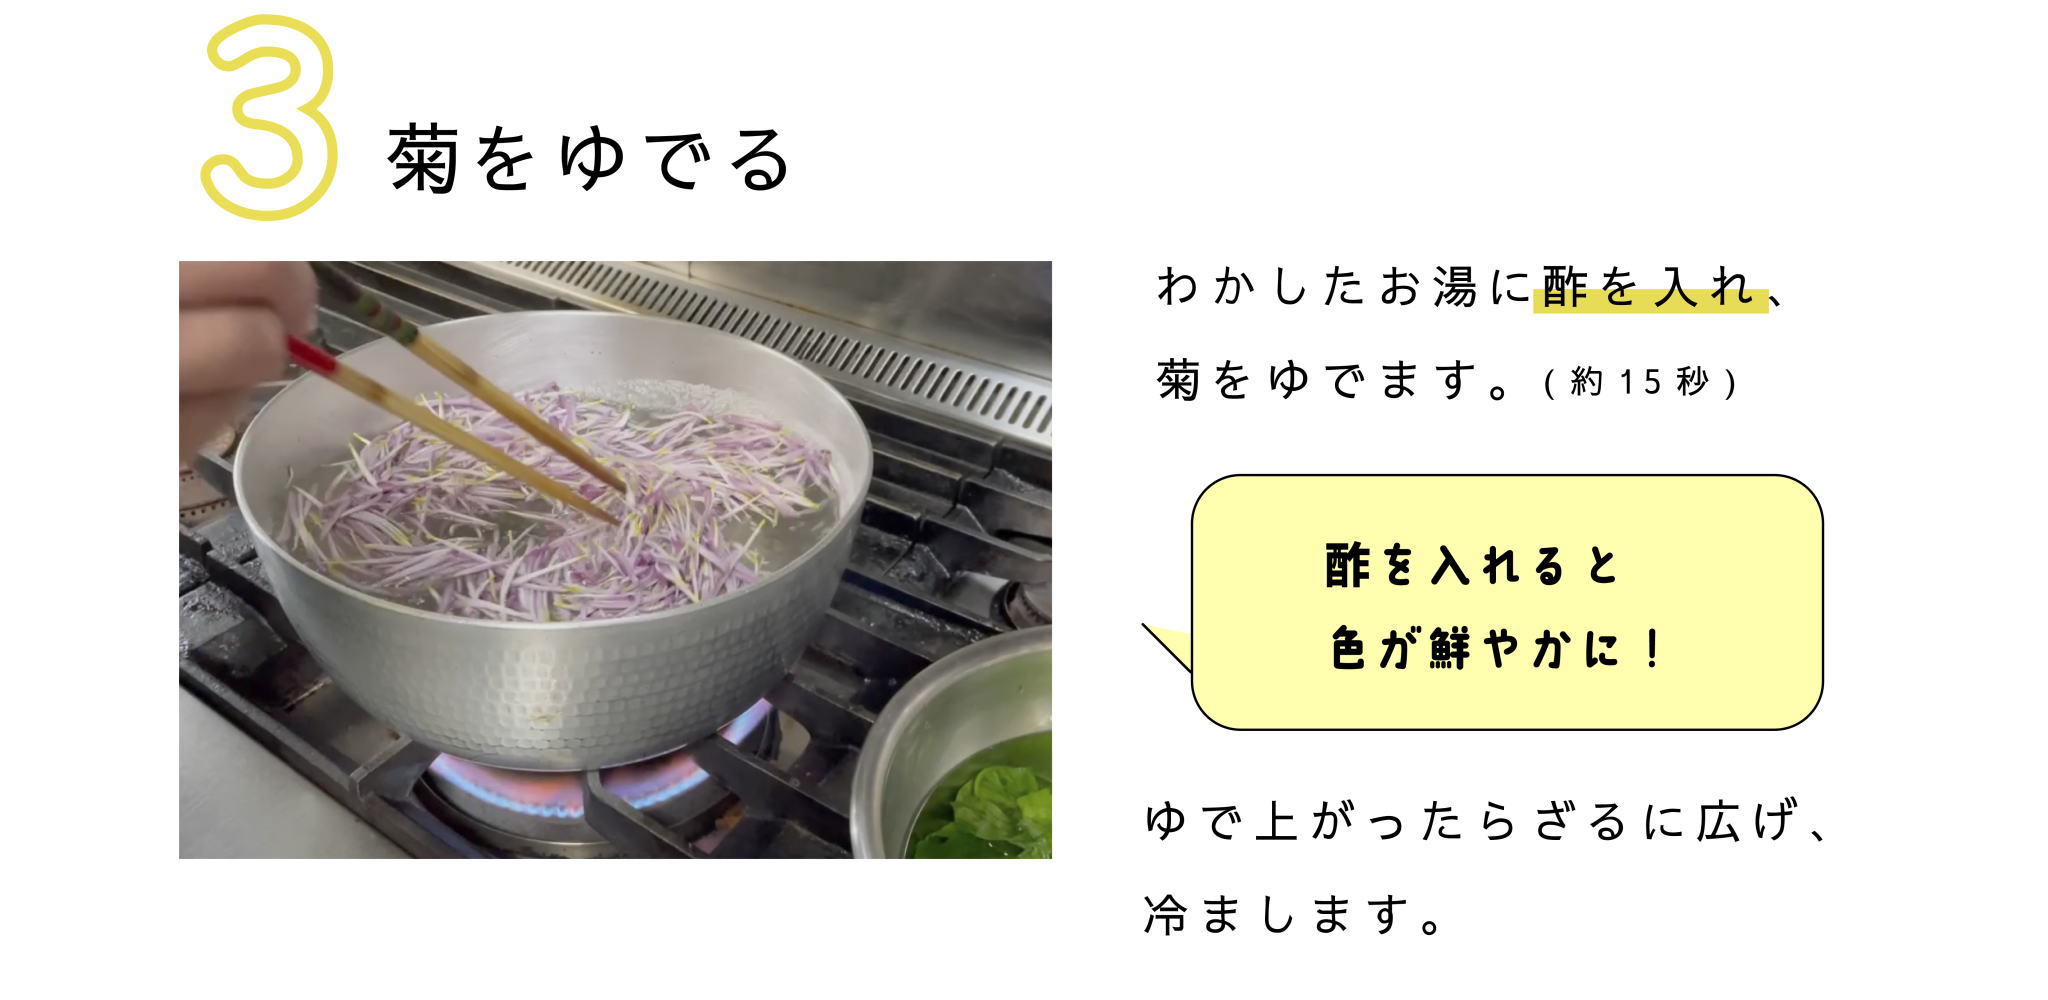 3.菊をゆでる
わかしたお湯に酢を入れ、
菊をゆでます（約15秒）
酢を入れると色が鮮やかに！
ゆで上がったらざるに広げ、冷まします。